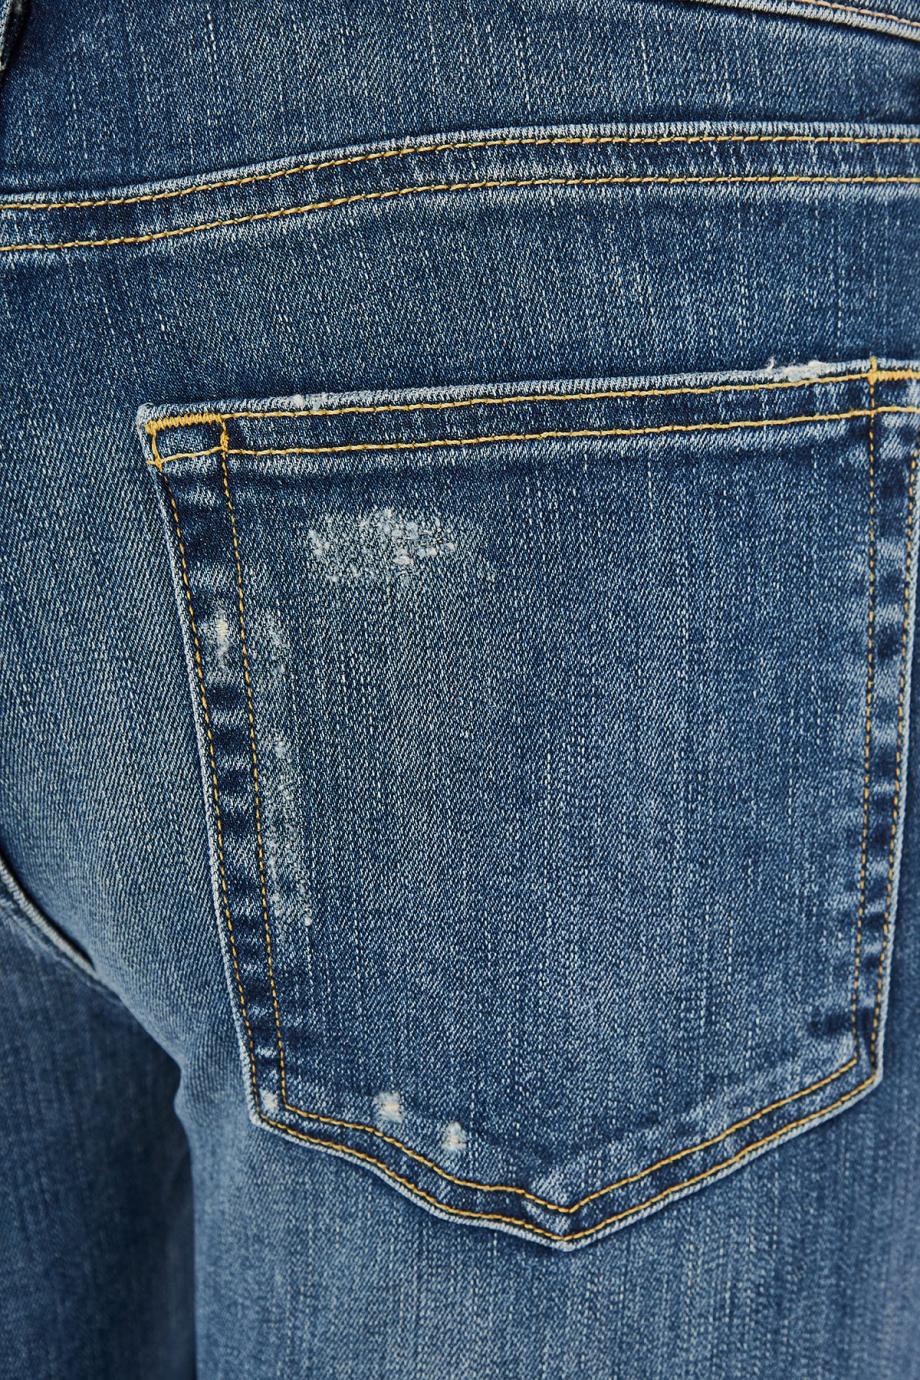 Cotton denim jeans